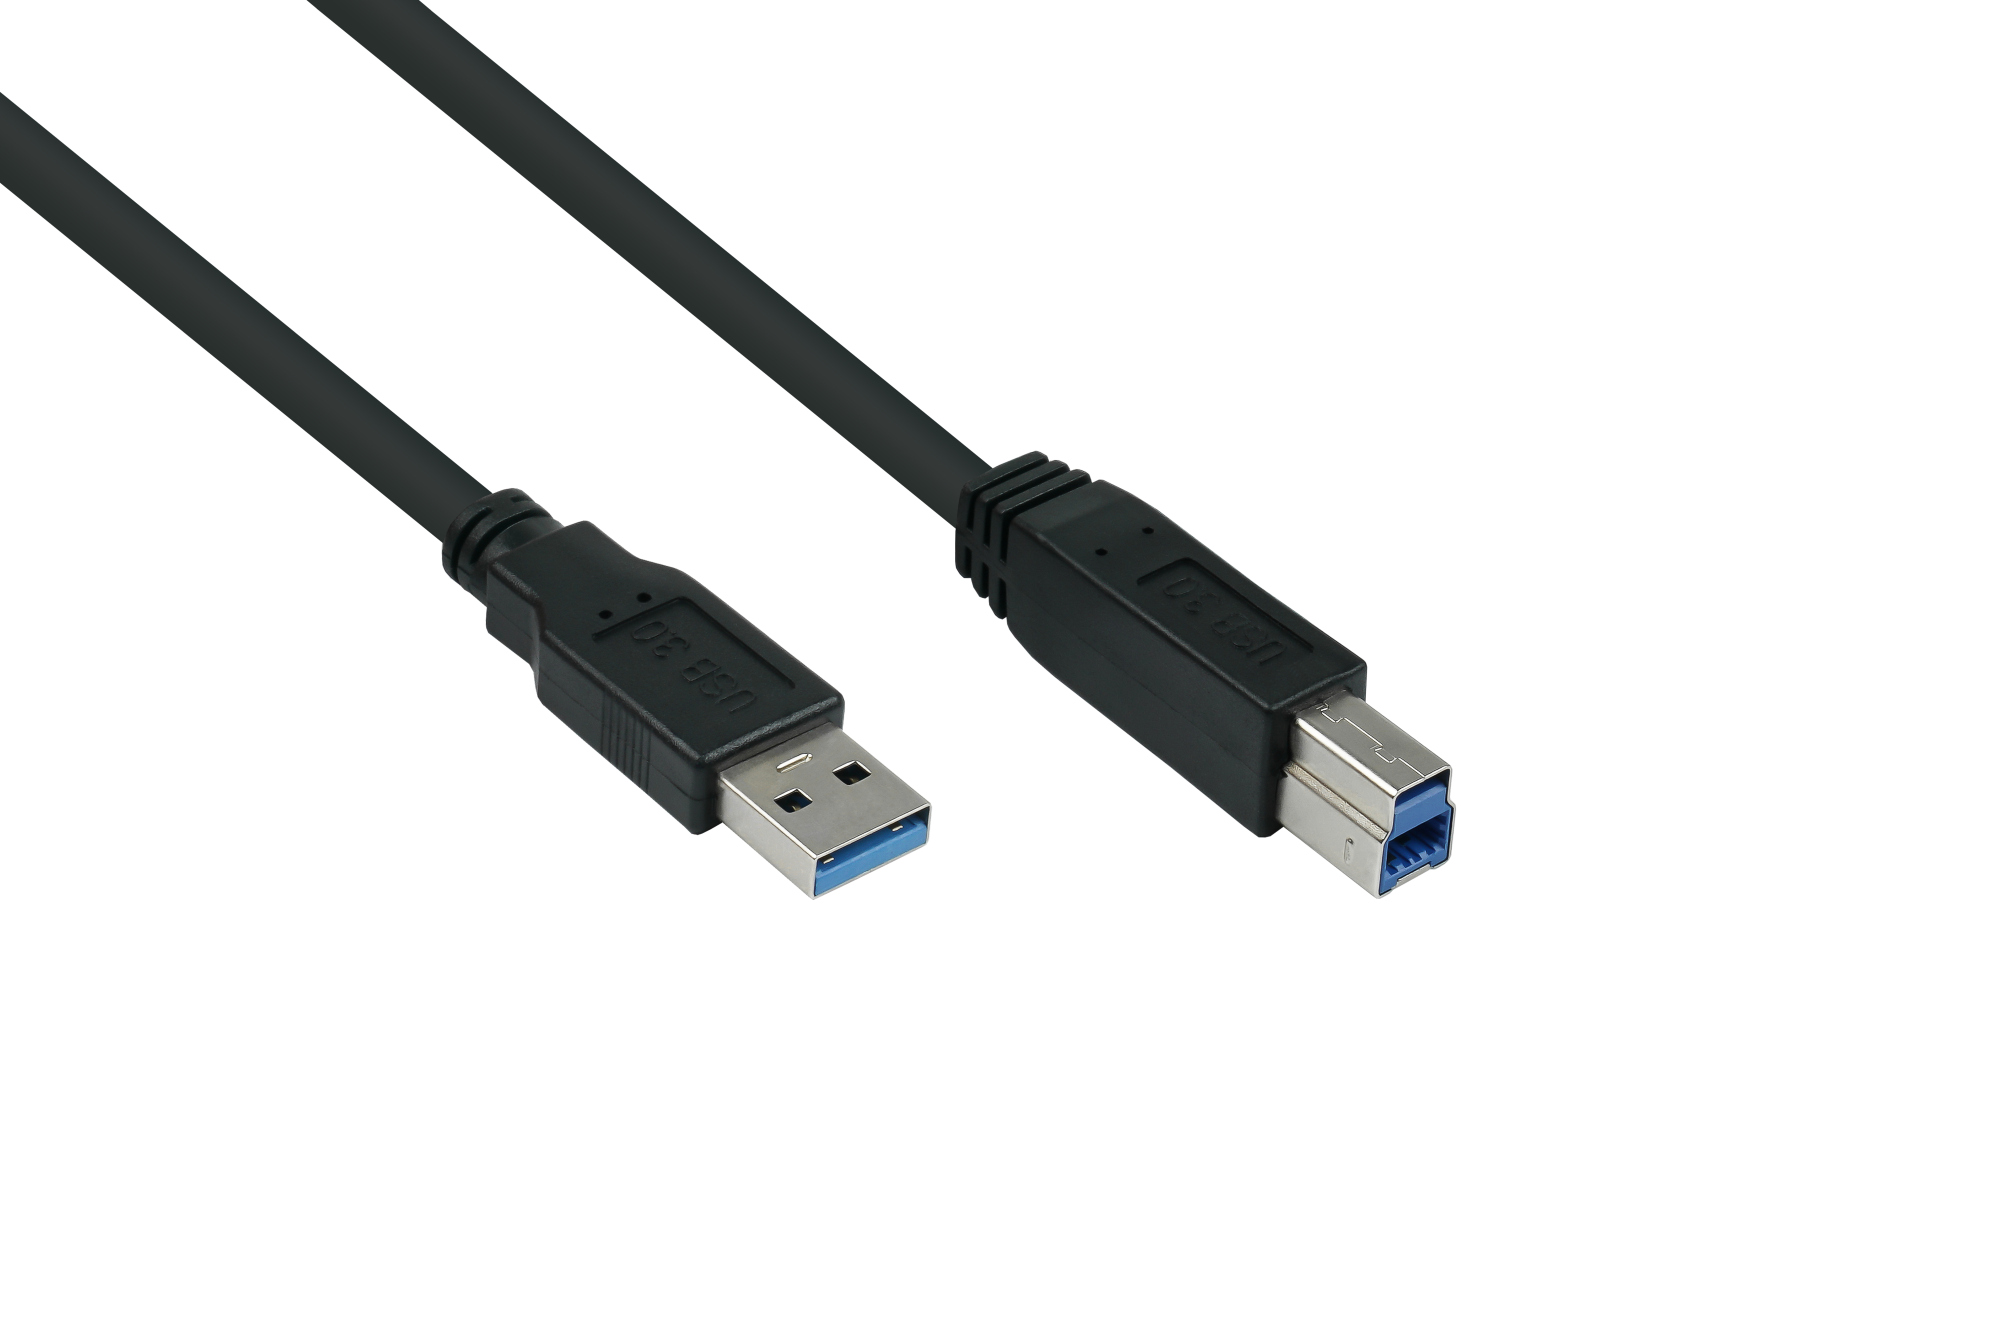 USB 3.0 Kabel Stecker A an Stecker B, Premium, AWG28 / AWG24, UL, KUPFER, schwarz, 5m